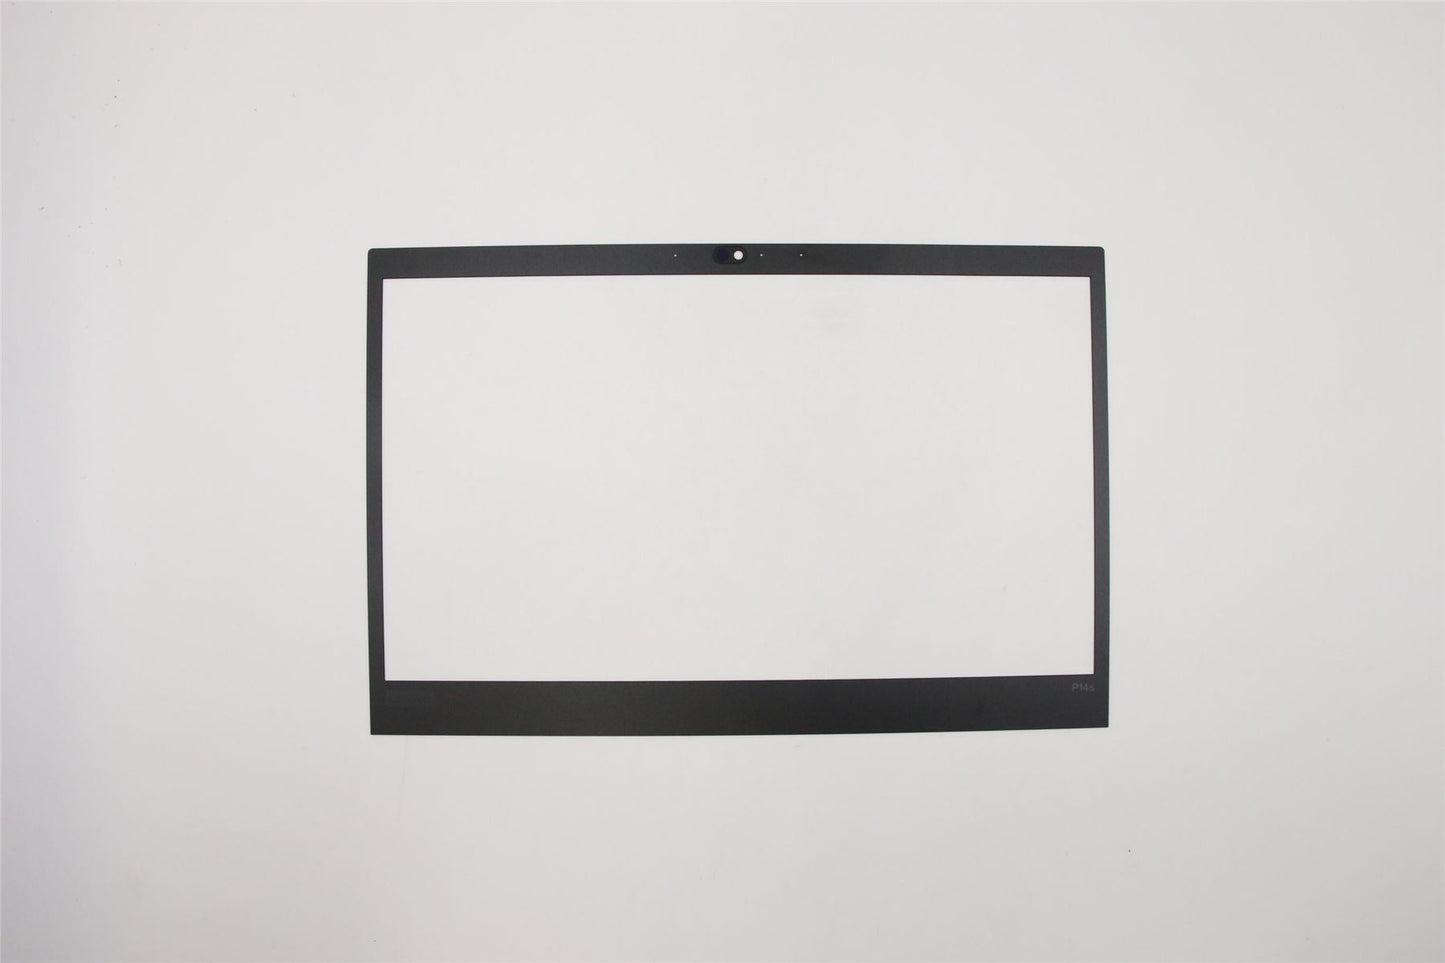 Lenovo ThinkPad P14s Gen 1 Bezel front trim frame Cover Black 5B30S73487